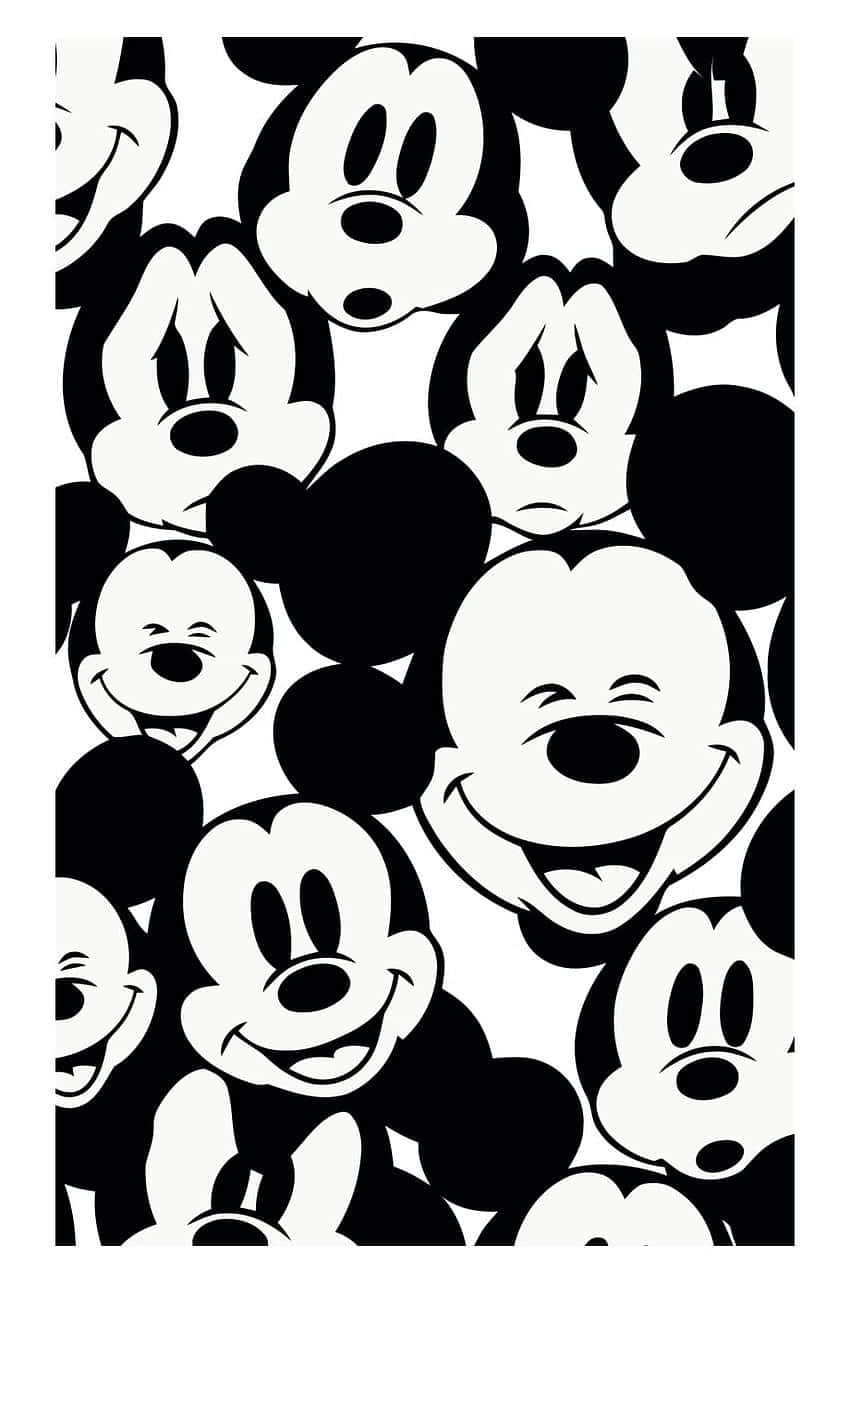 Bilde af et sort elektronisk apparat med et design af det ikoniske Disney-figur Mickey Mouse. Wallpaper